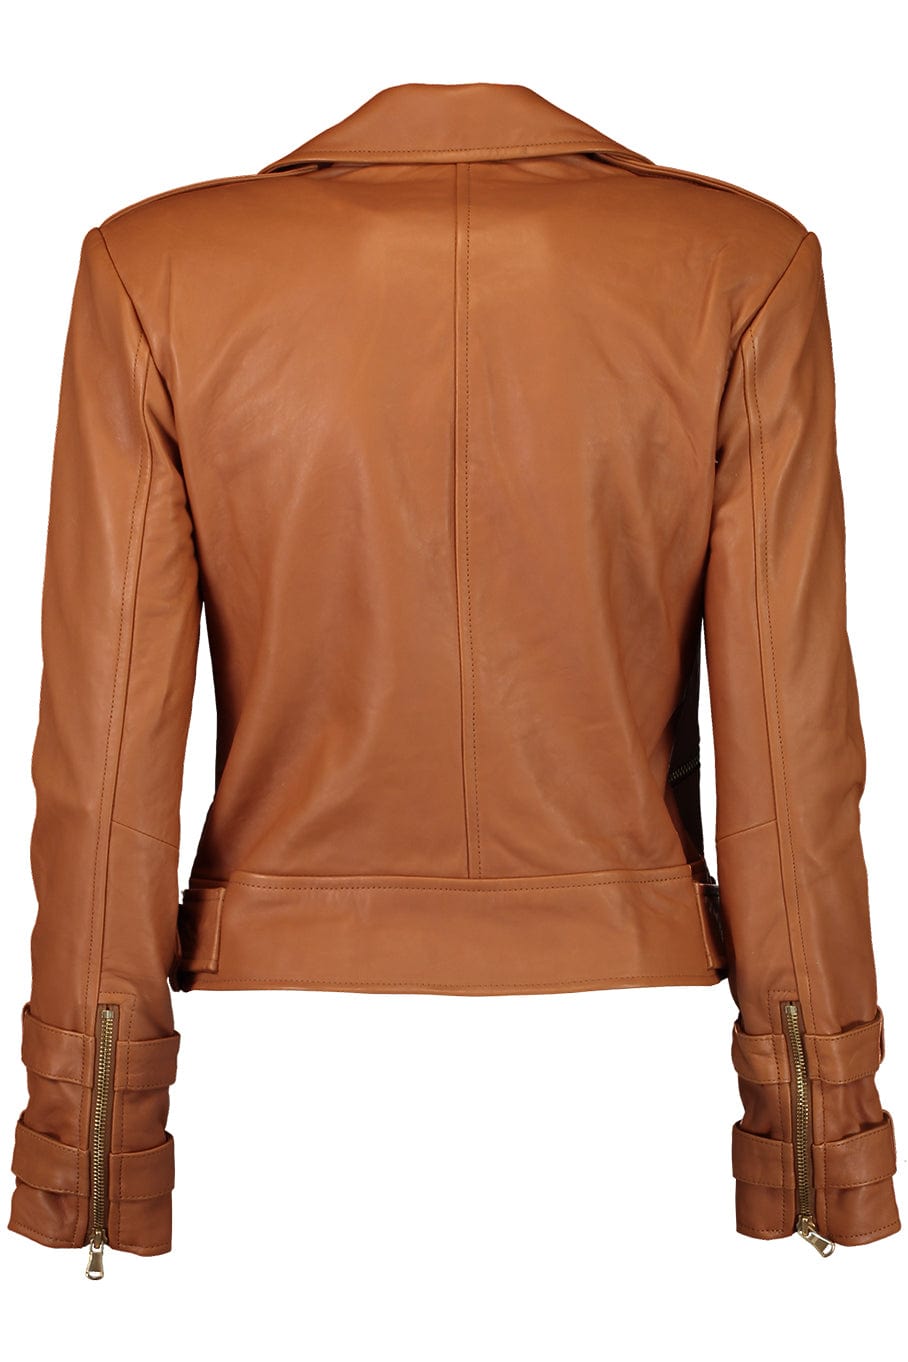 L'AGENCE-Billie Belted Leather Jacket-